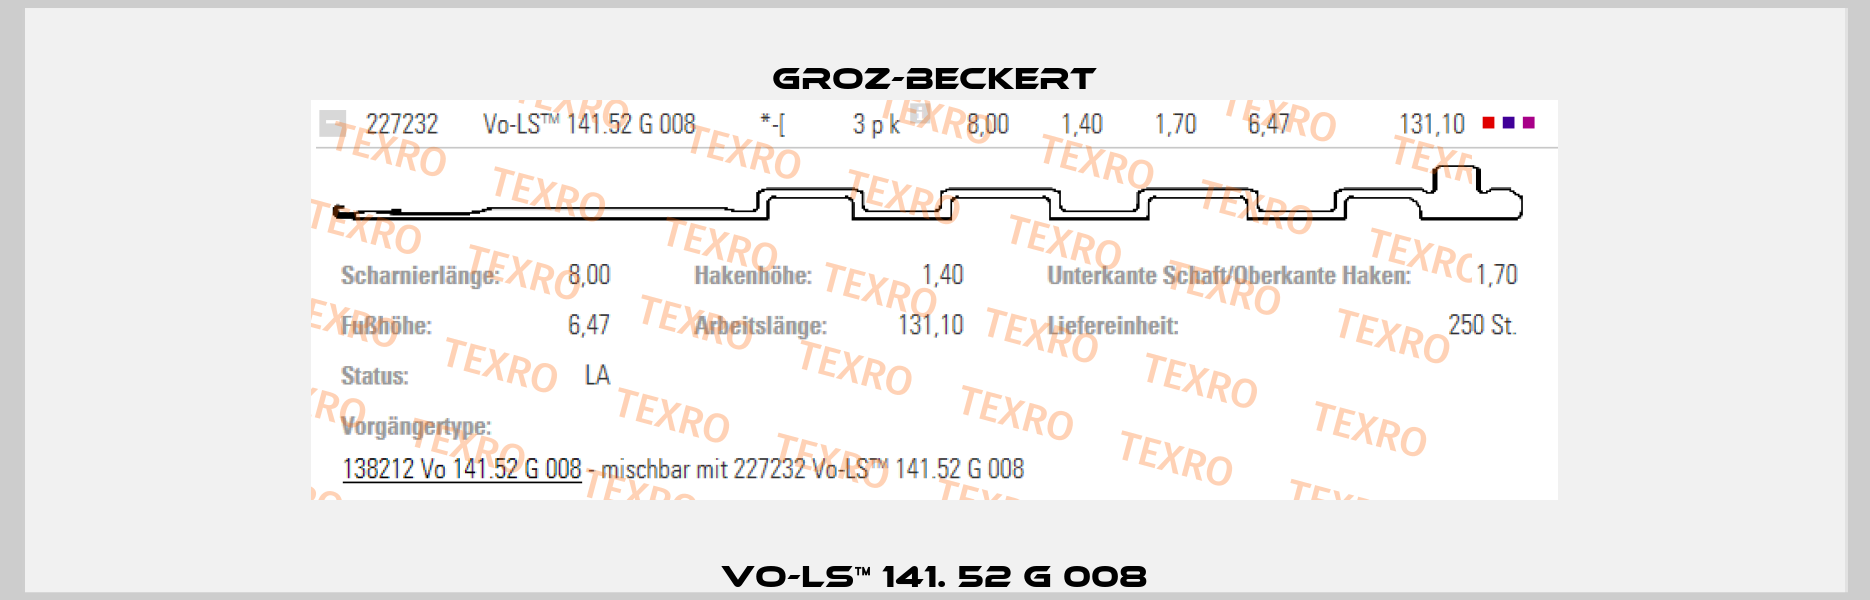 VO-LS™ 141. 52 G 008 Groz-Beckert